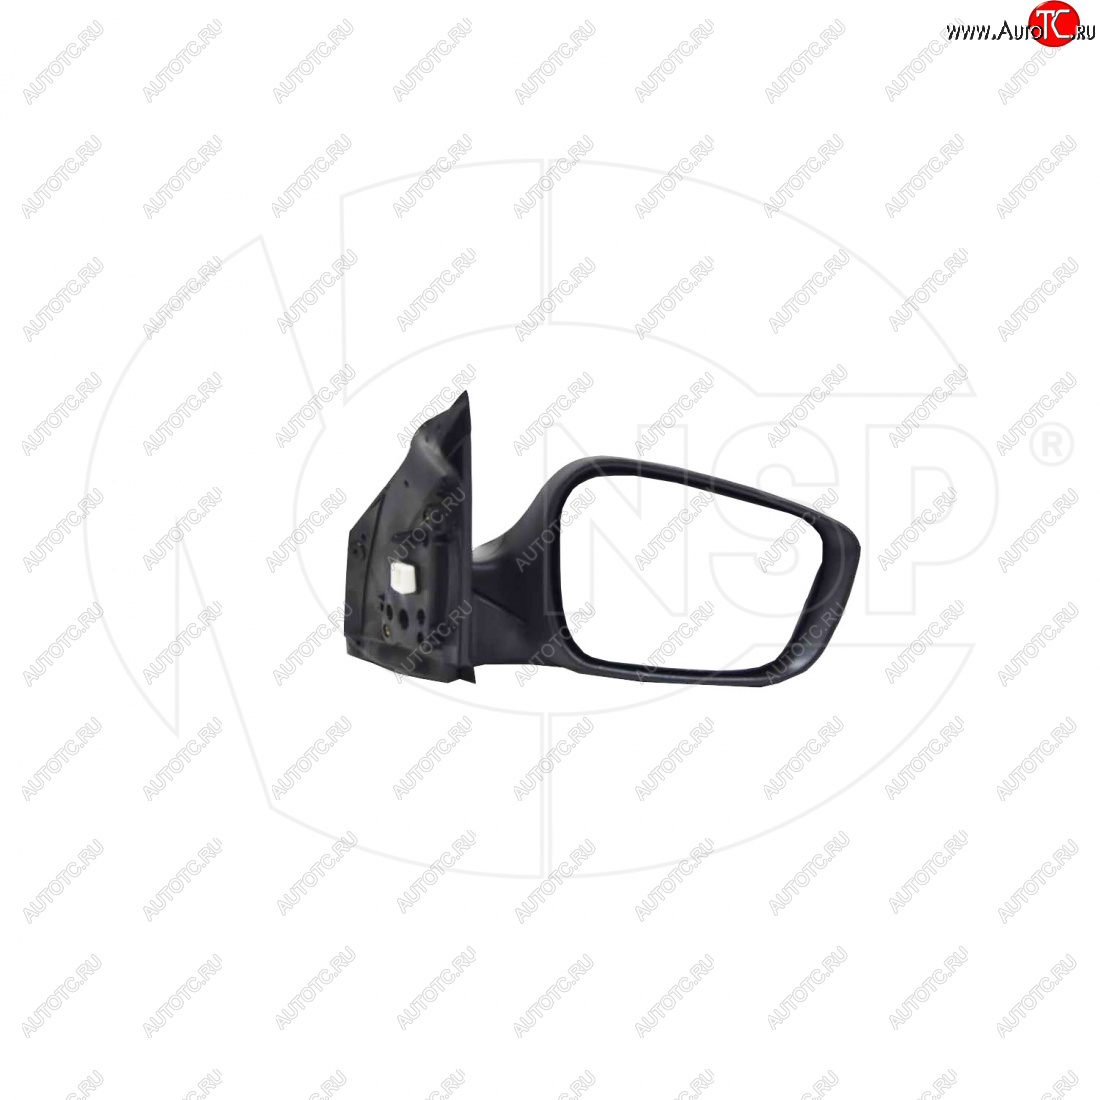 4 099 р. Зеркало зеркало заднего вида правое (регулировка, обогрев, повторитель) NSP  Hyundai Solaris ( 1 седан,  1 хэтчбек,  1 хэтчбэк) (2010-2017) (, Неокрашенное)